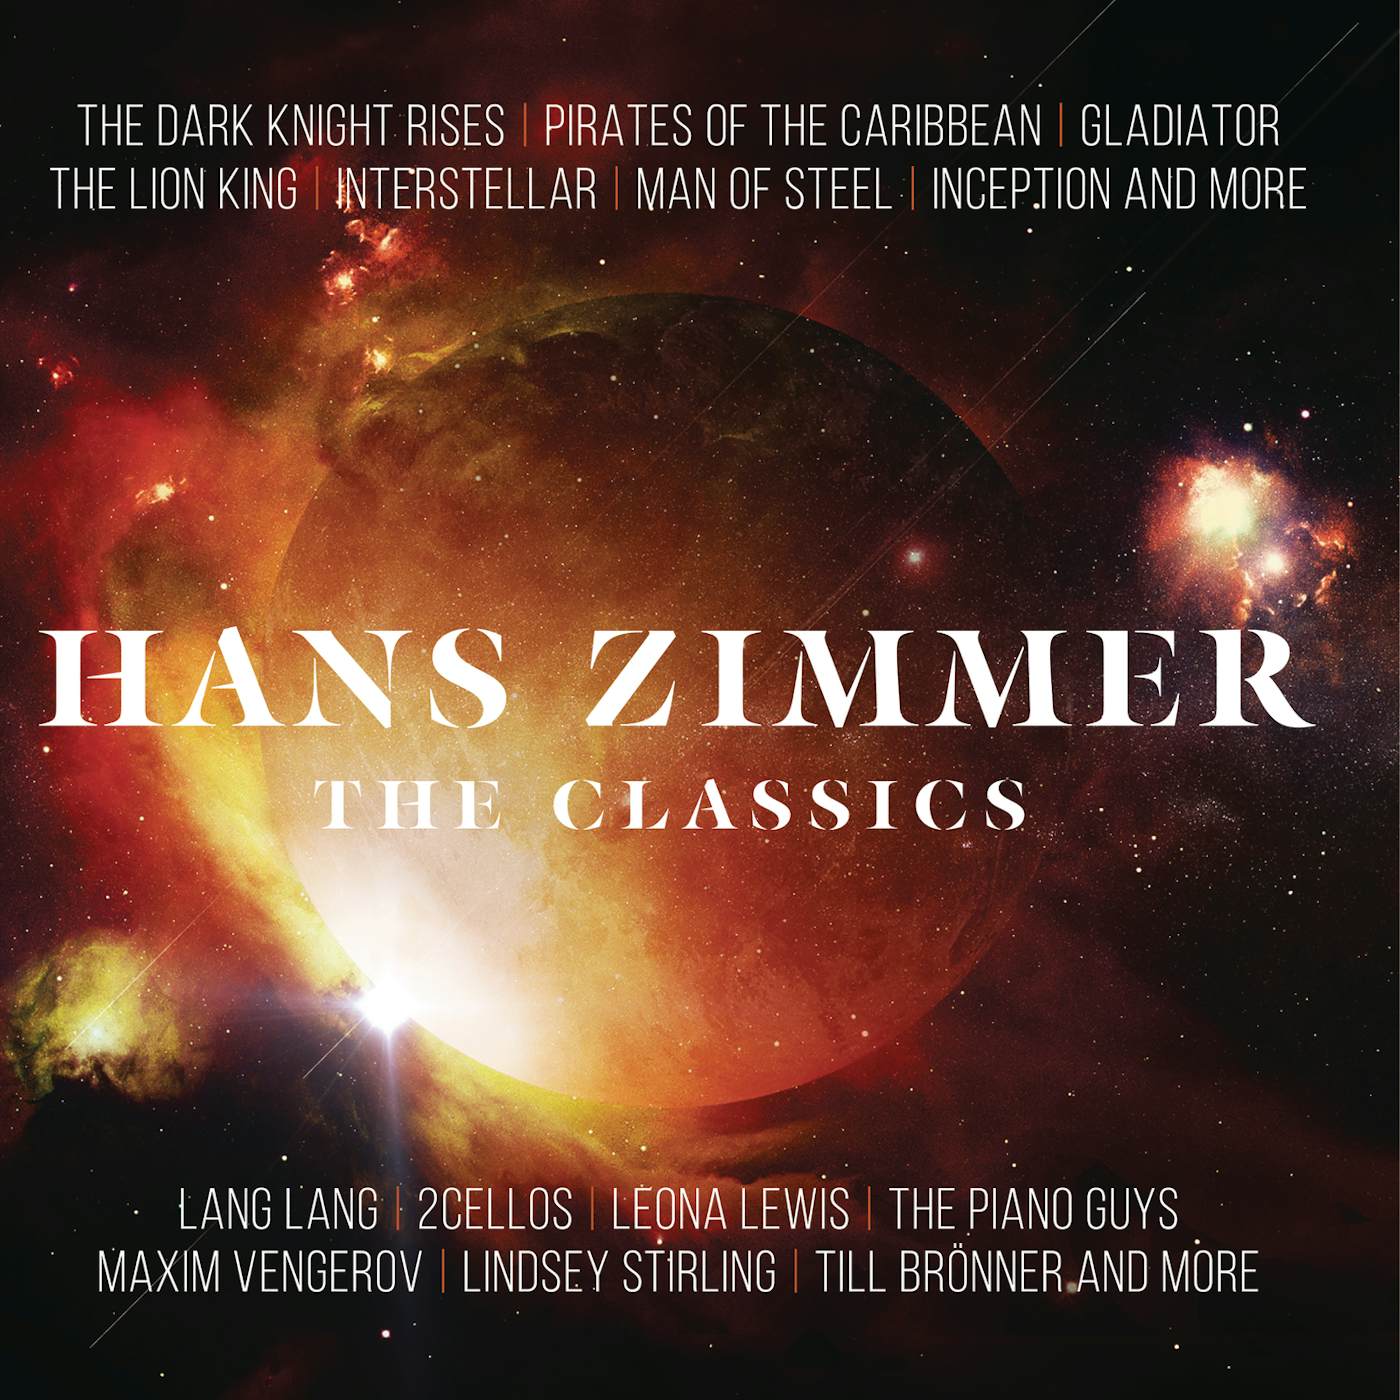 Hans Zimmer - The Classics Vinyl Record